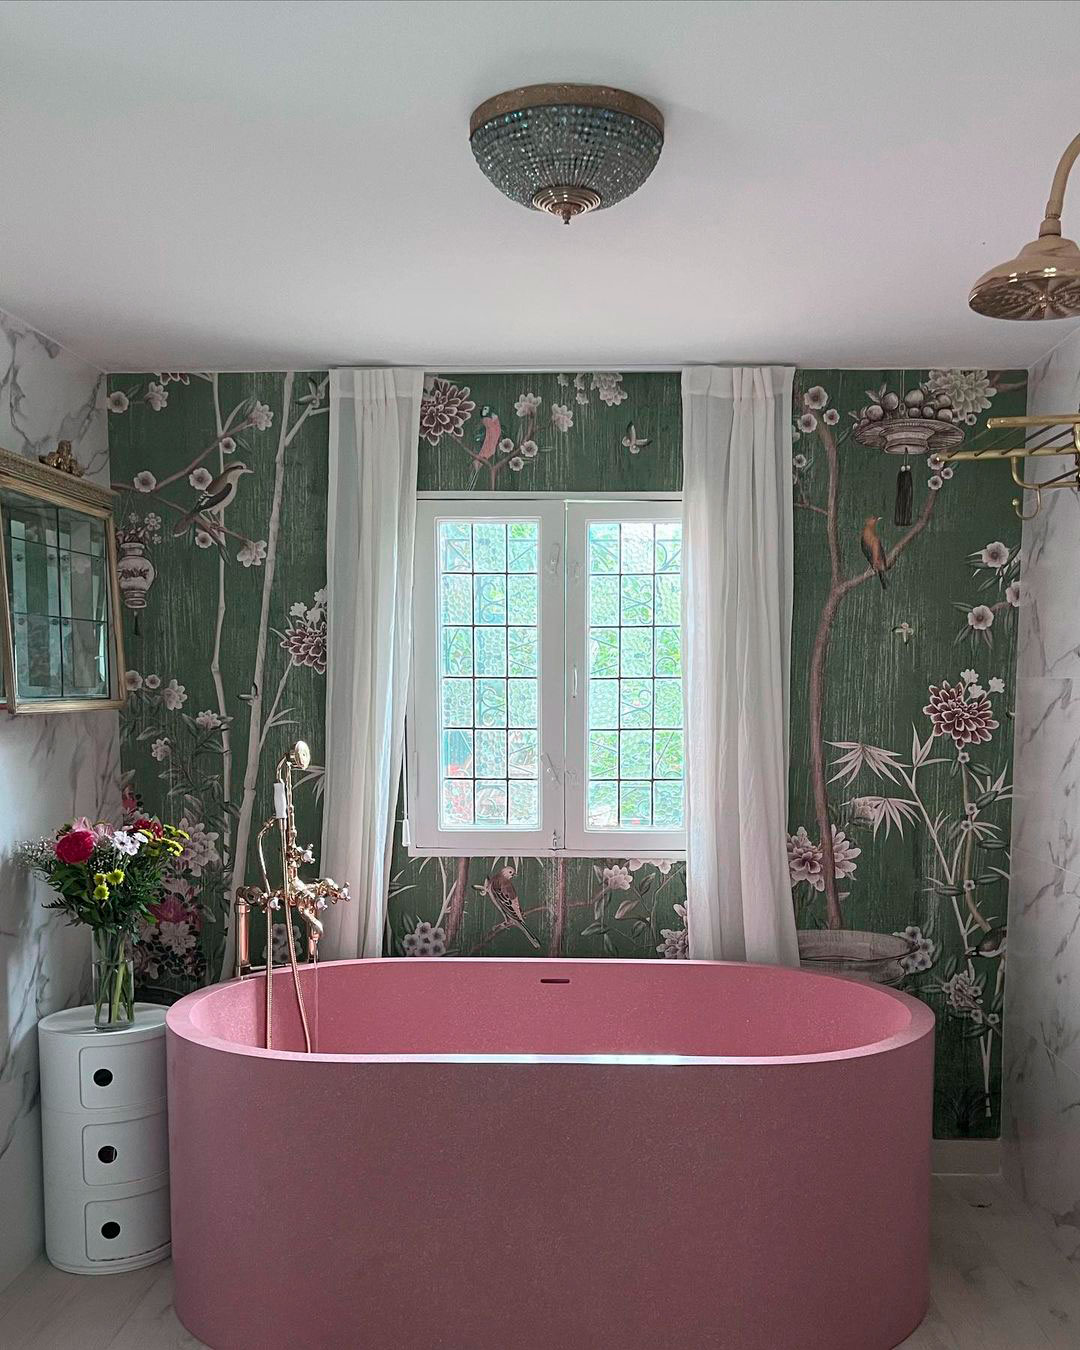 El baño de la China Suárez, con una tina rosa que se robó todas las miradas